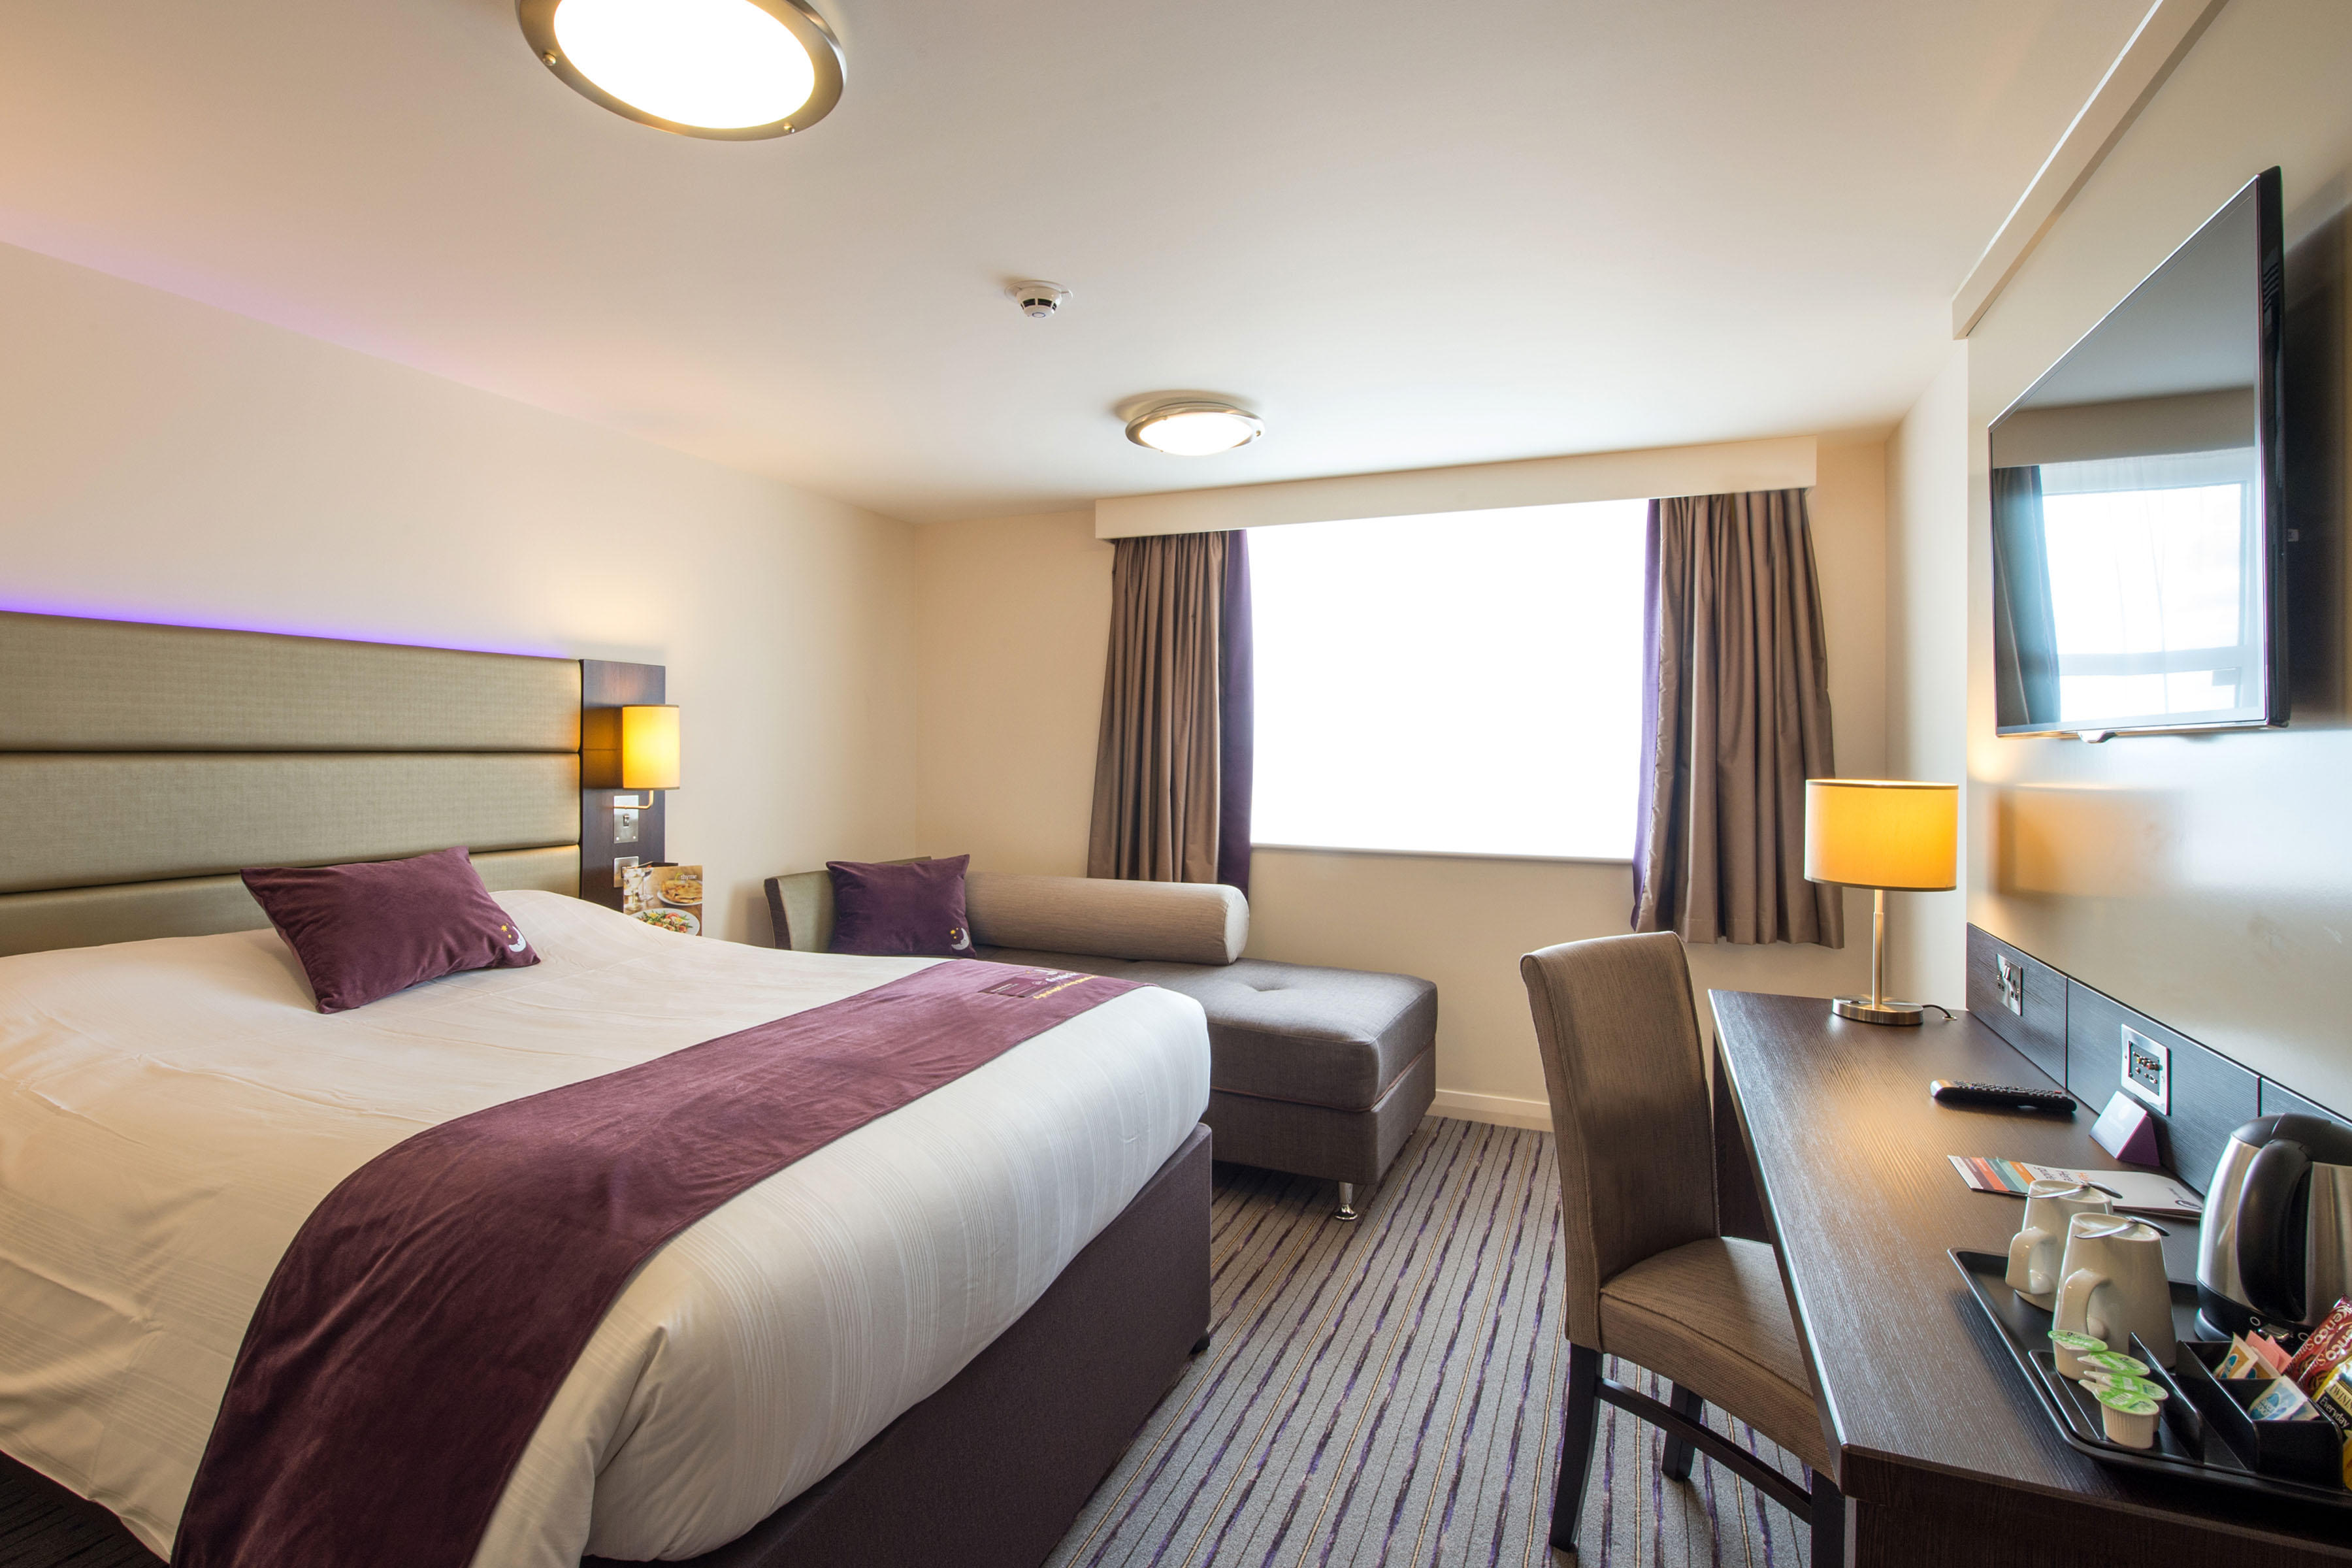 Premier Inn bedroom Premier Inn London Kingston Upon Thames hotel Kingston Upon Thames 03330 033403